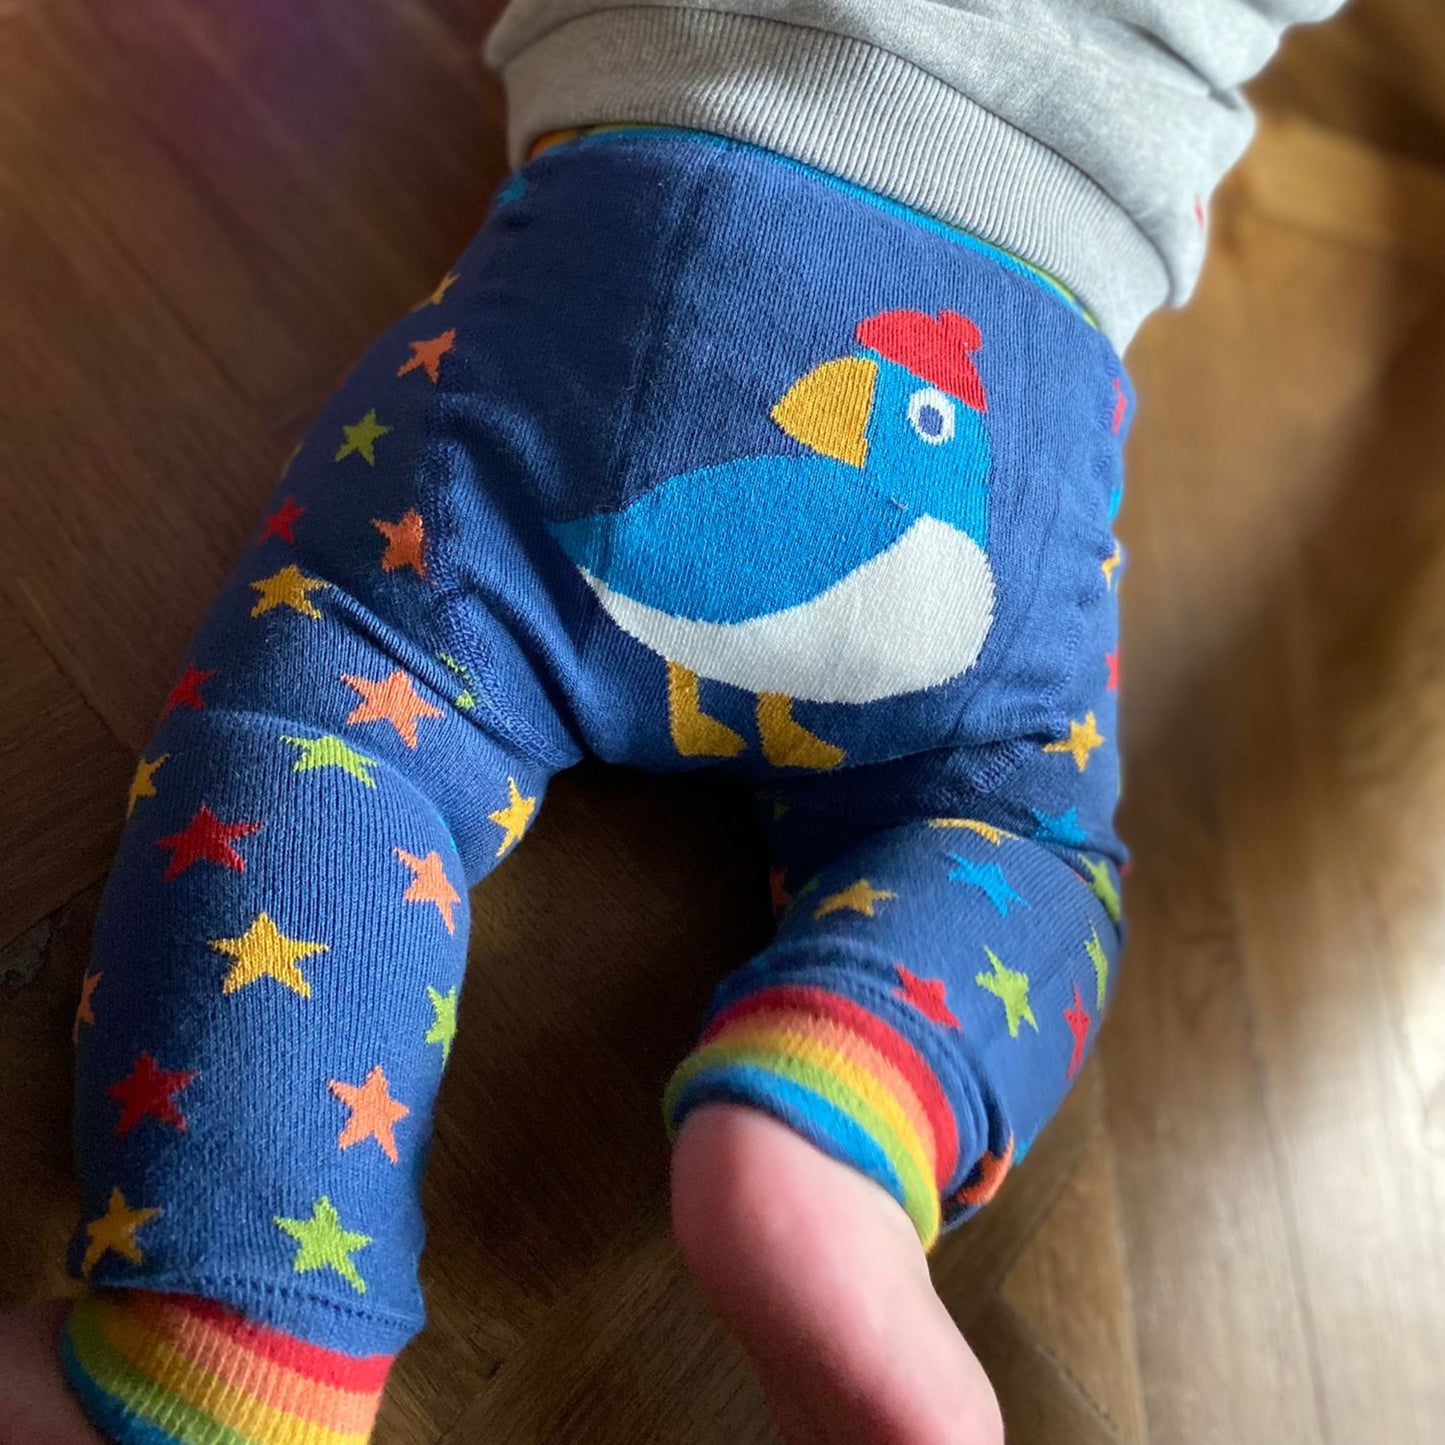 Baby wearing puffling leggings